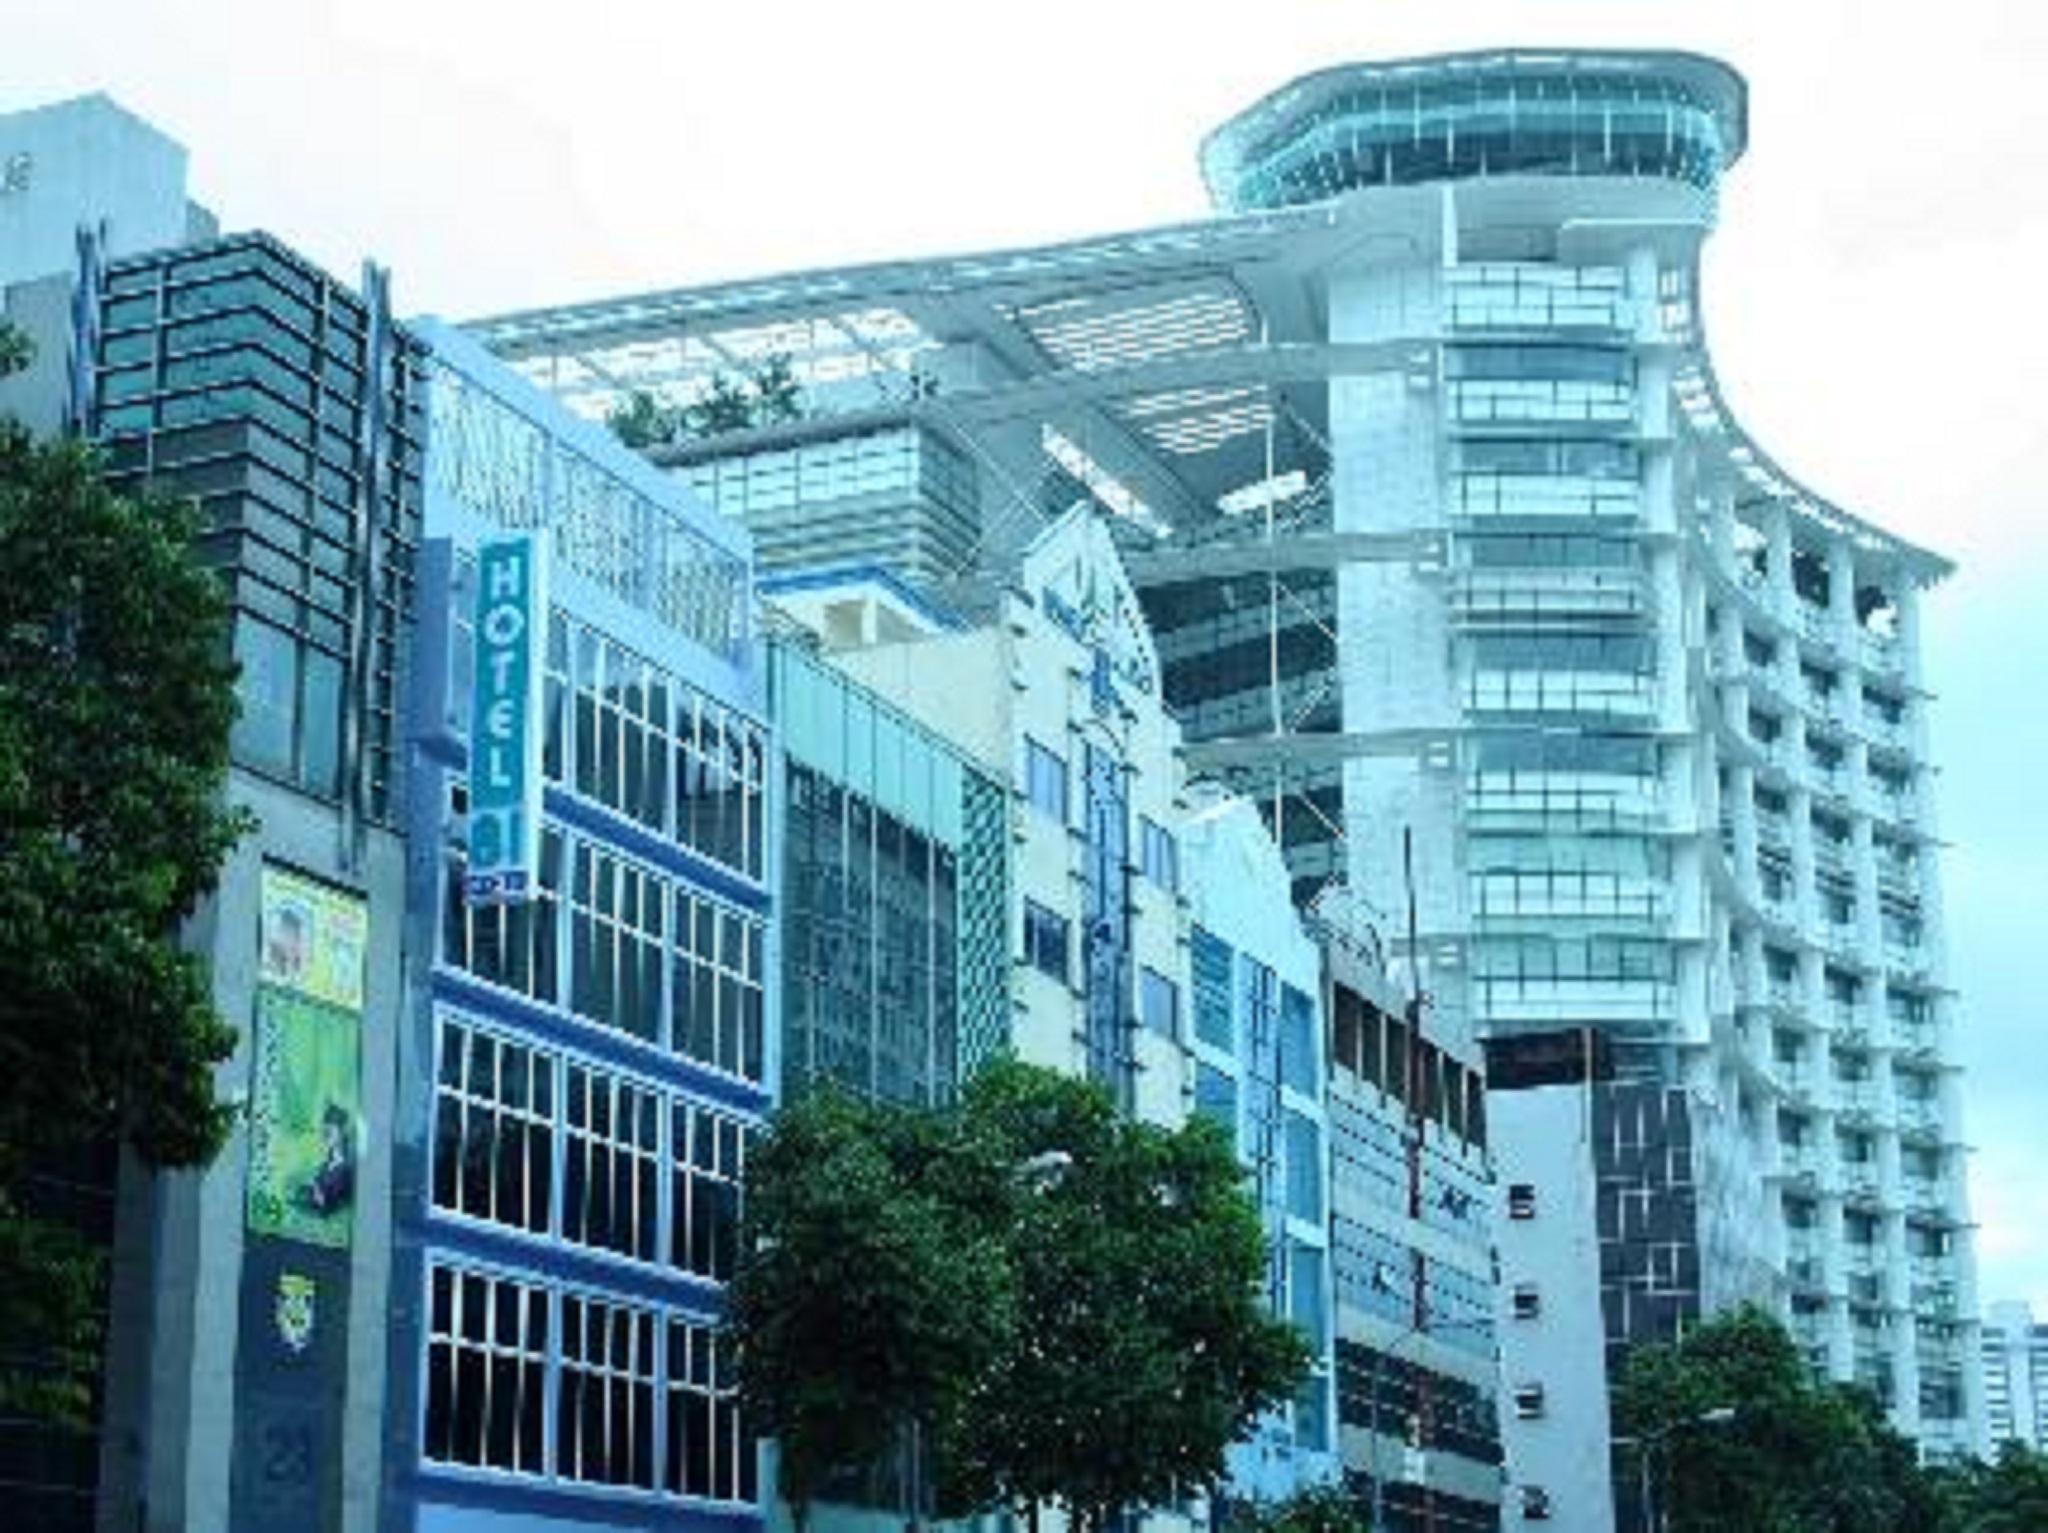 โรงแรม 81 บูกิส สิงคโปร์ ภายนอก รูปภาพ